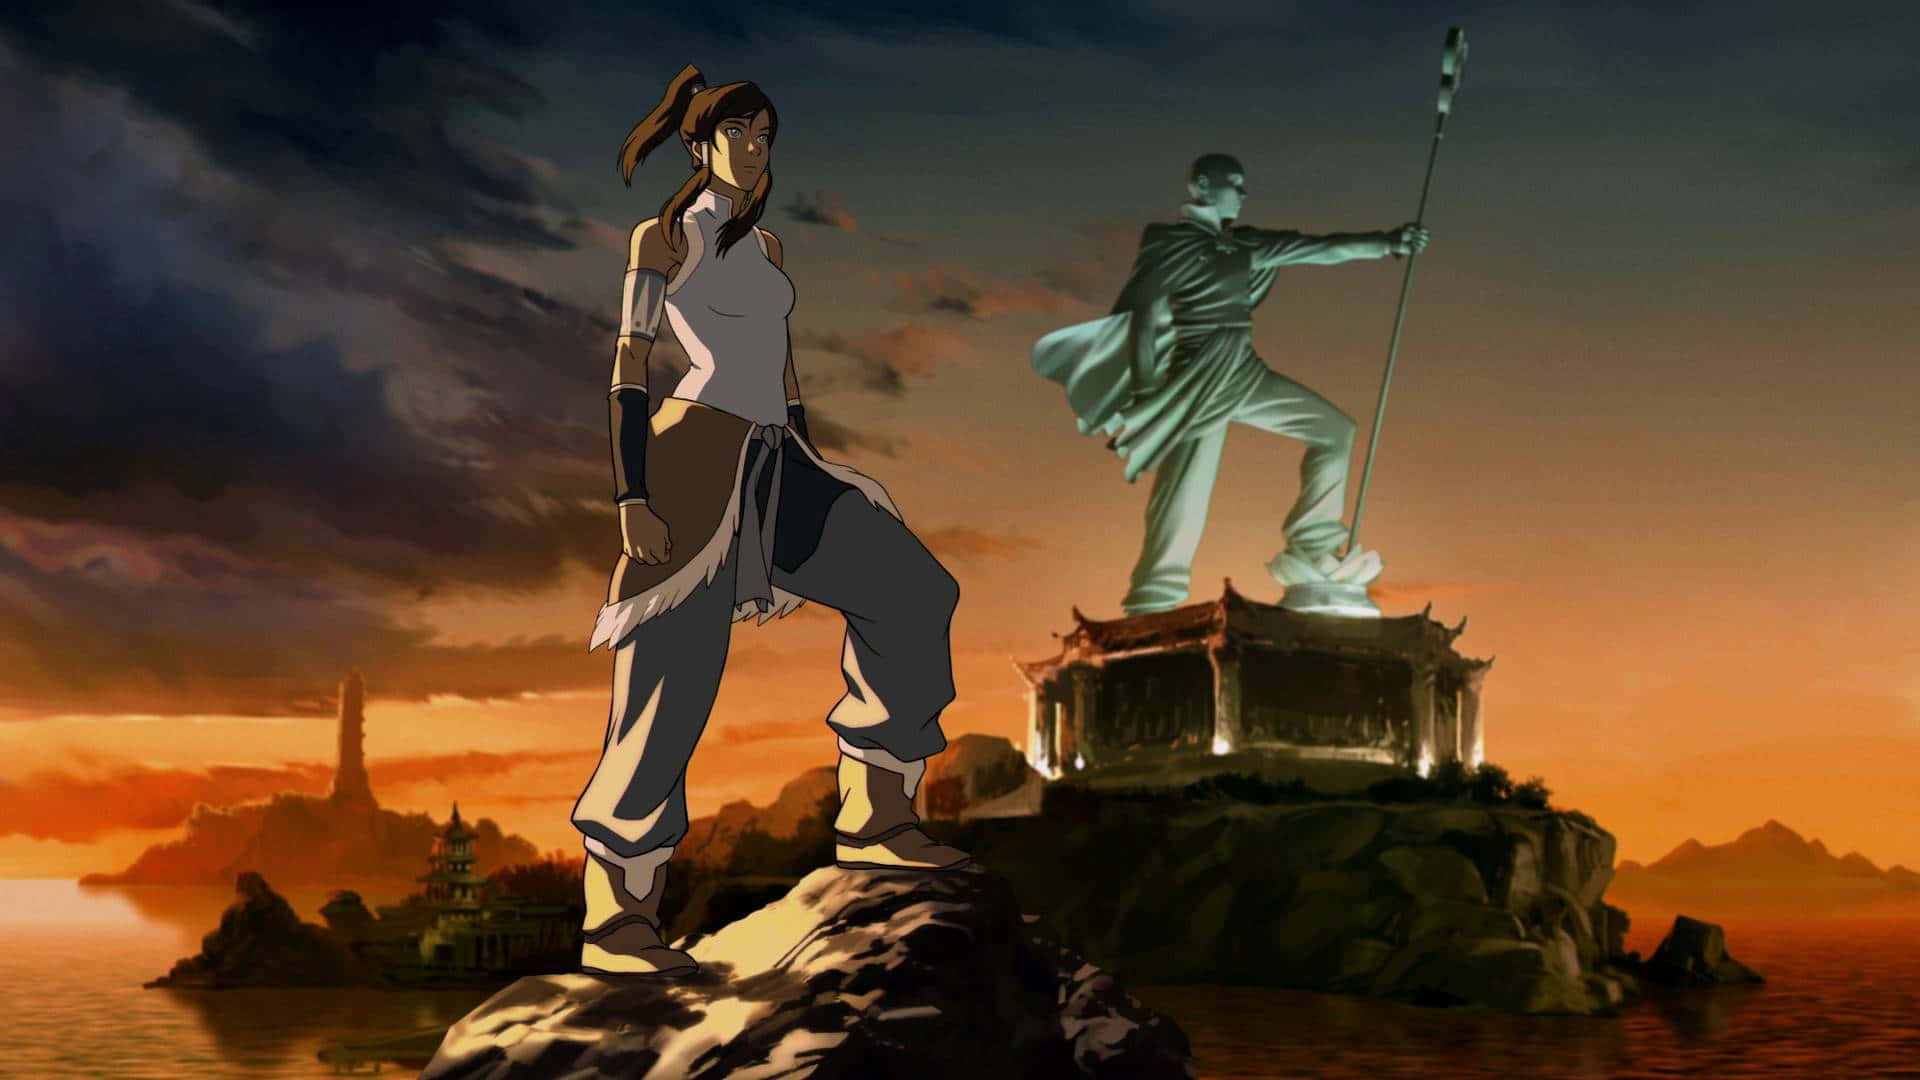 Korra, The Brave Avatar Of The Avatar World